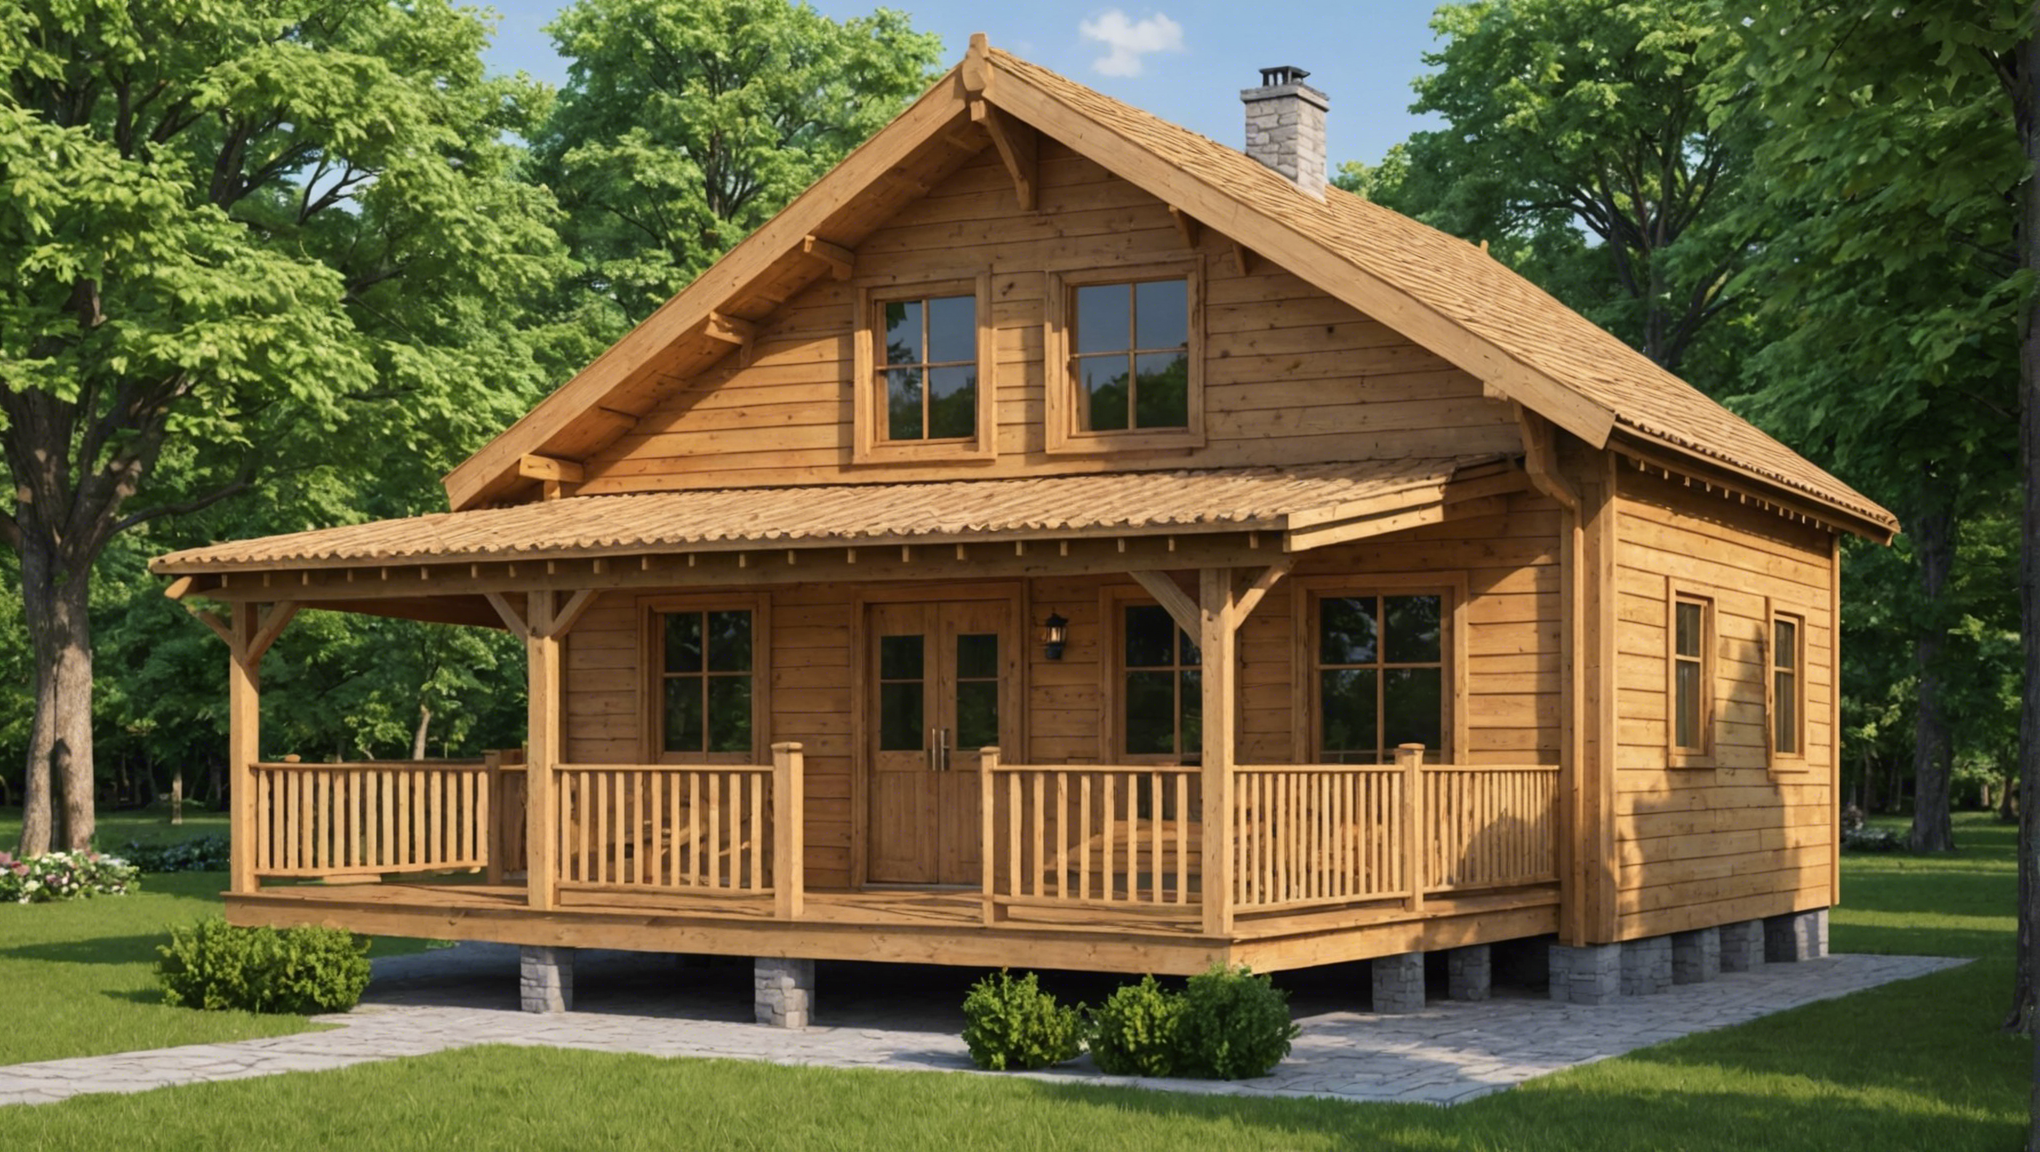 découvrez les avantages et les raisons d'opter pour la construction d'une maison en bois. une solution écologique, durable et esthétique pour votre projet immobilier.